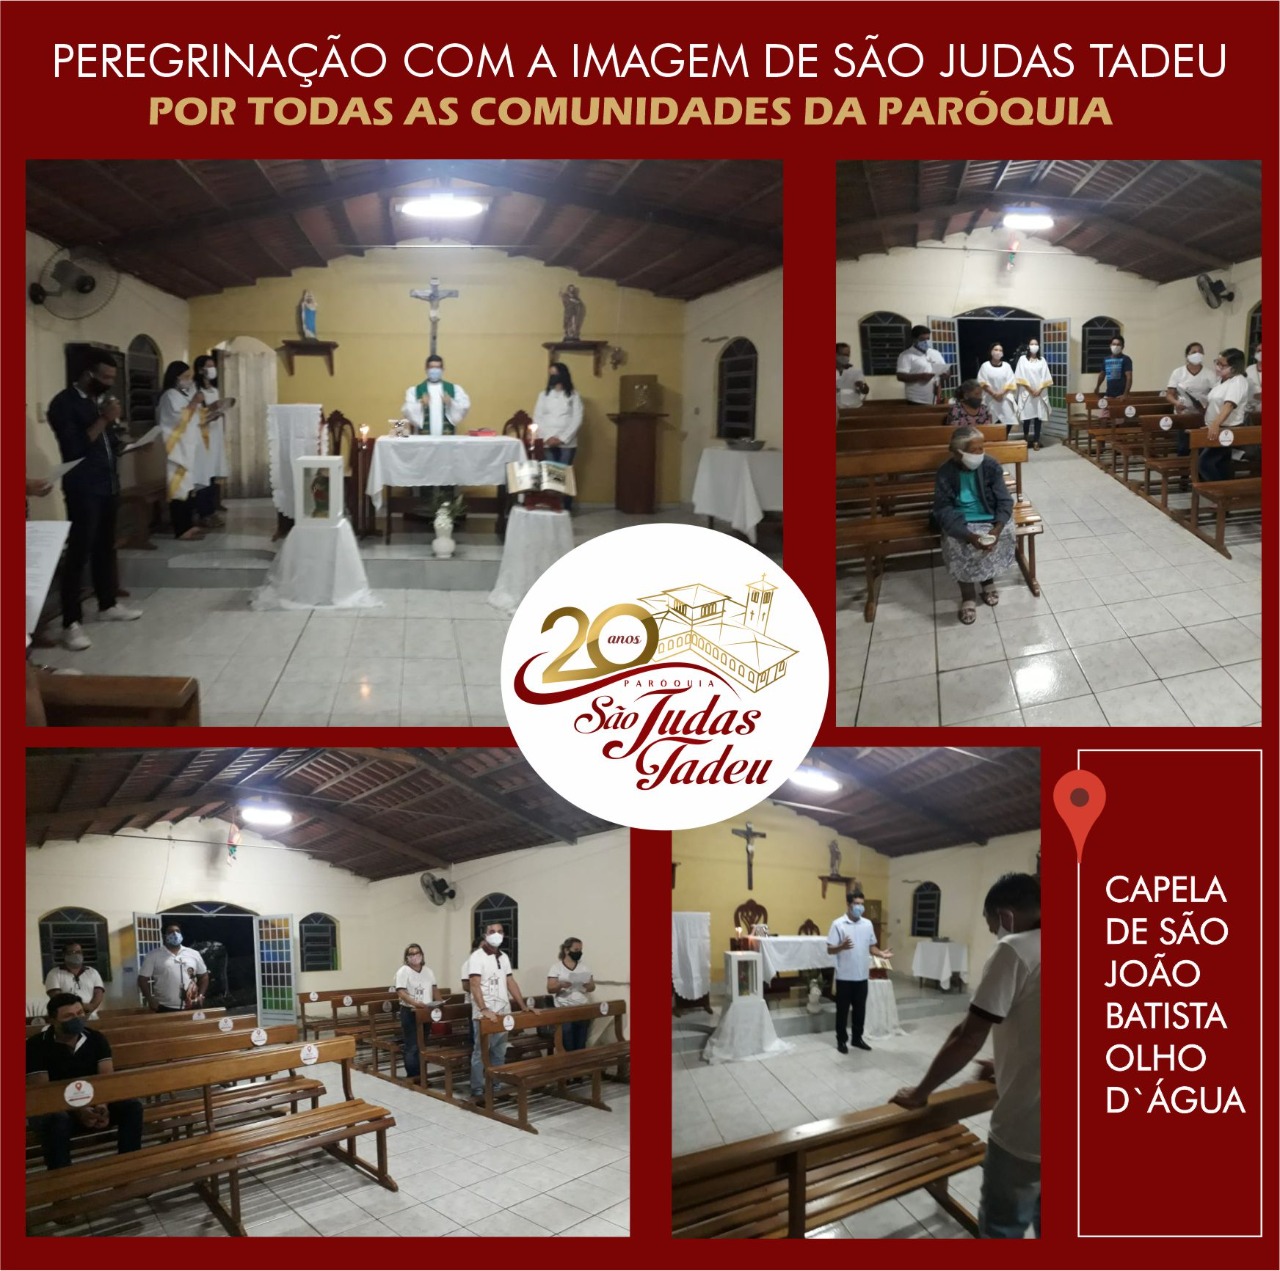 You are currently viewing Imagem peregrina de São Judas Tadeu chegou a 5ª comunidade